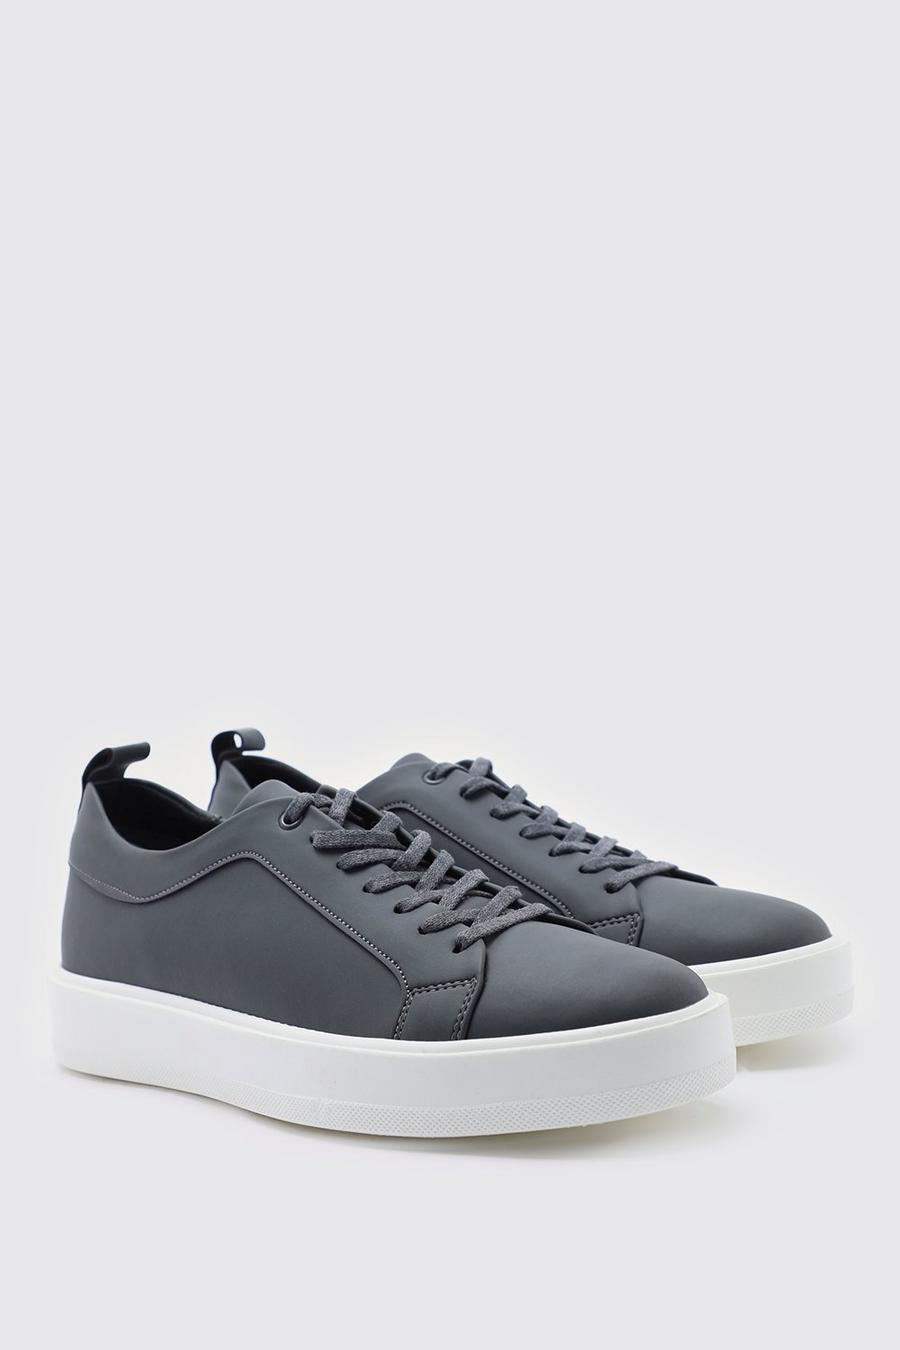 Smarte Sneaker aus mattem Kunstleder, Charcoal grey